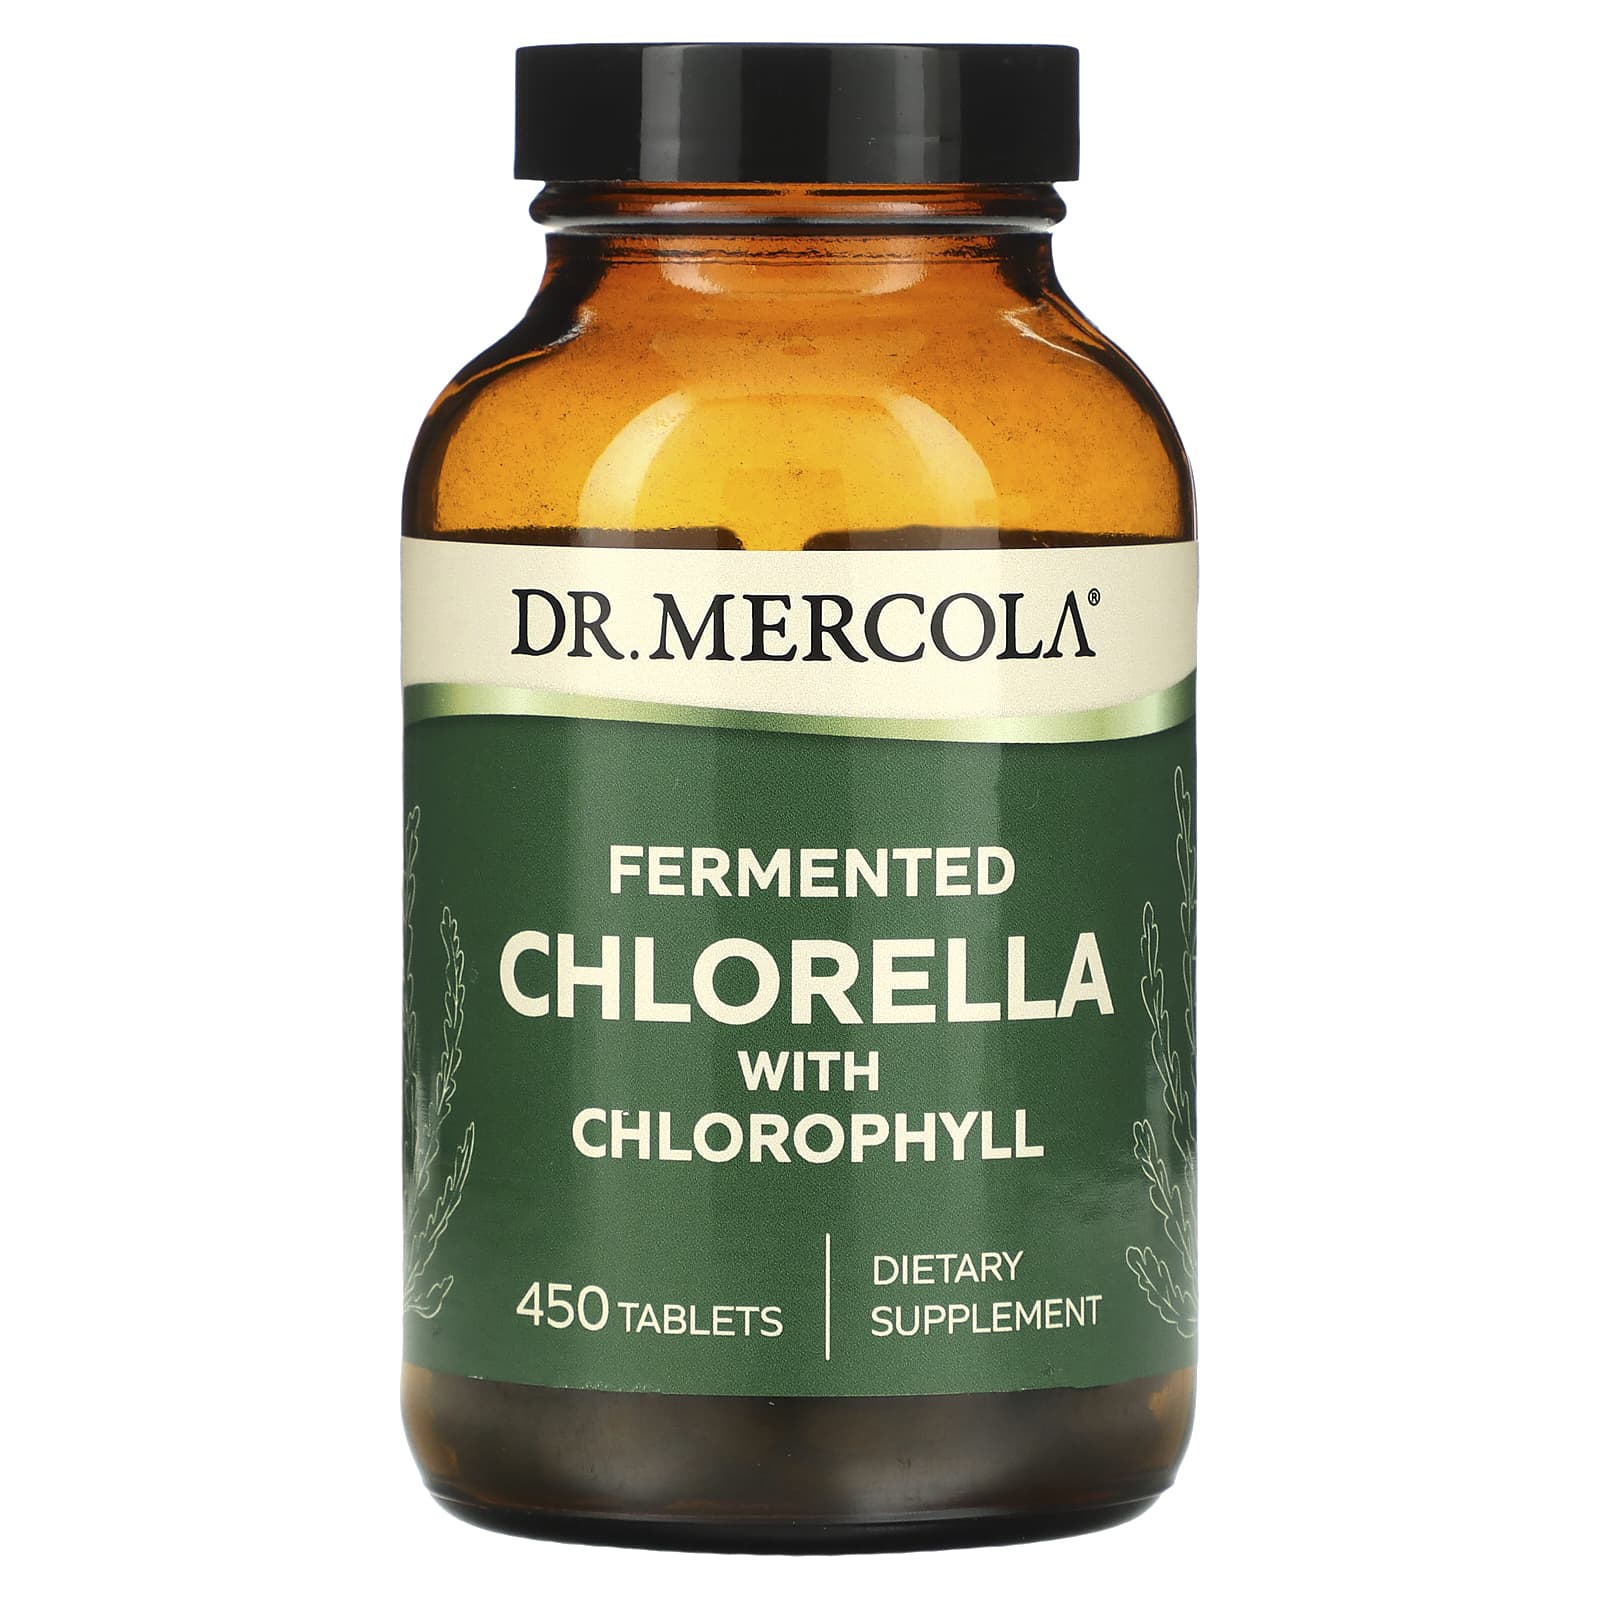 Dr. Mercola ферментированный экстракт хлореллы 450 таблеток dr mercola ферментированная хлорелла 450 таблеток